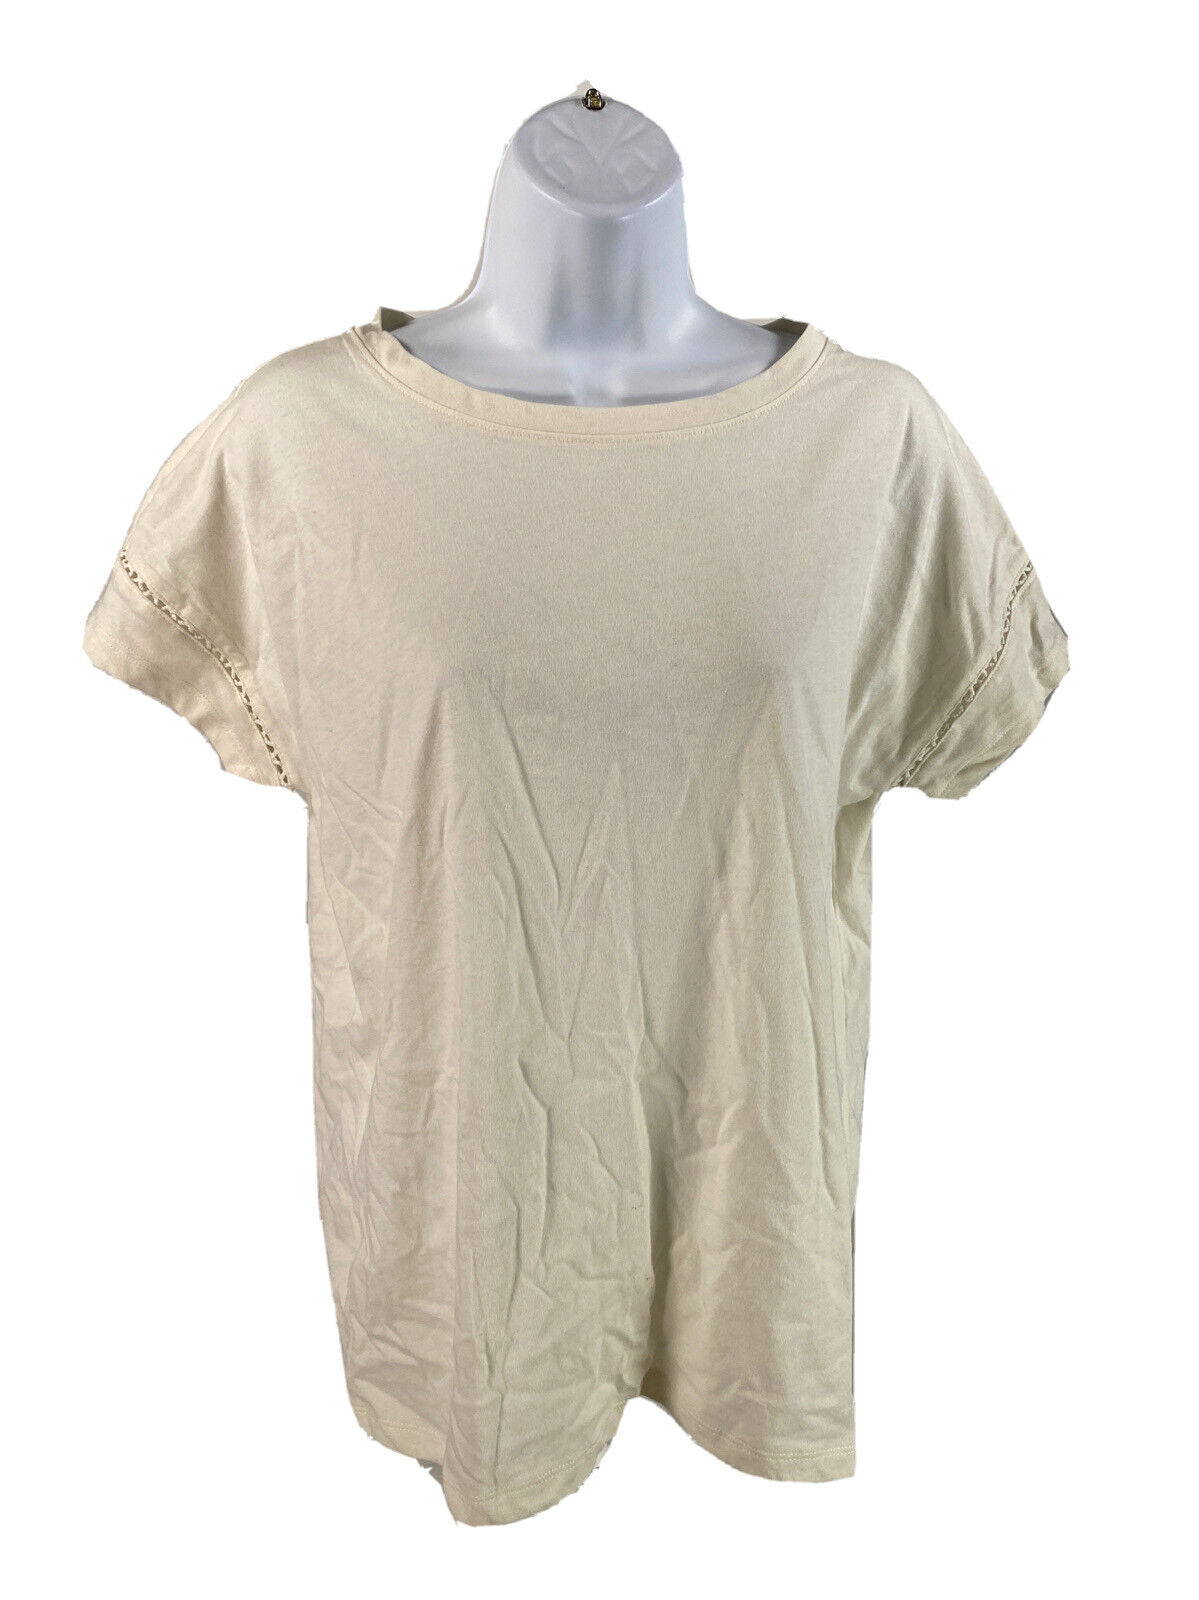 Eddie Bauer Women's White Short Sleeve Cotton T-Shirt Sz S